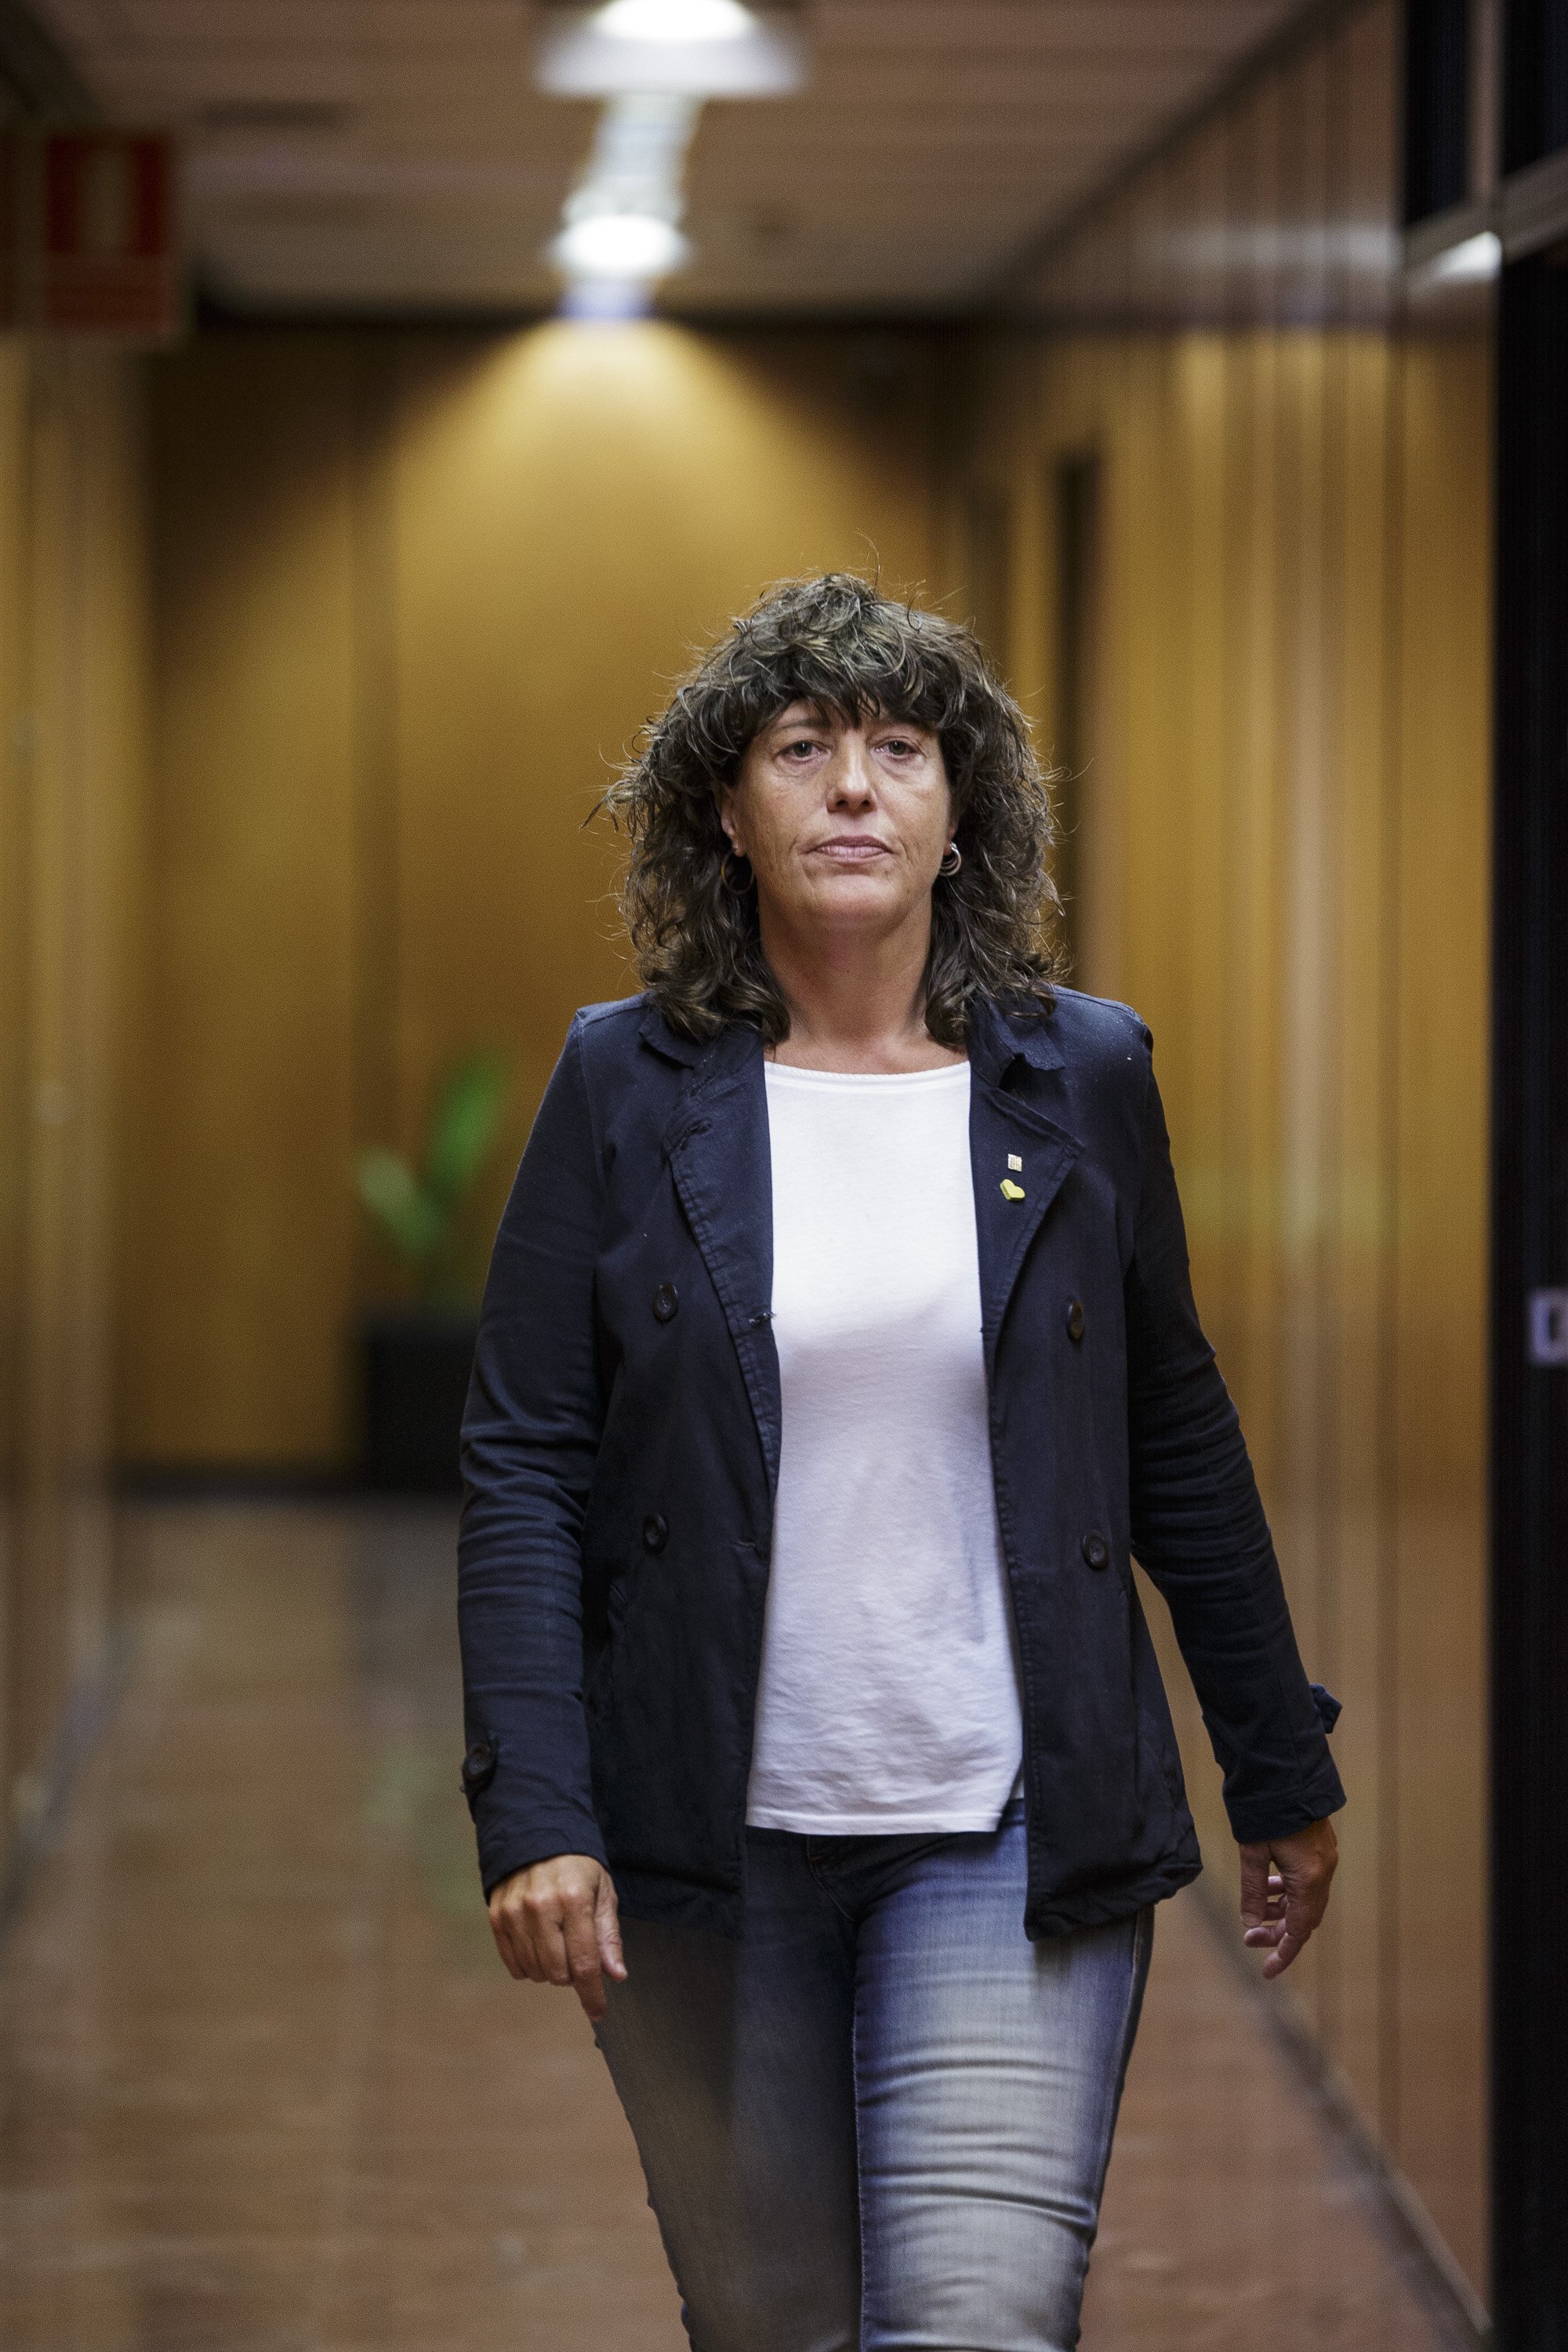 La consellera Jordà, candidata a liderar la llista d'ERC a Girona el 14-F